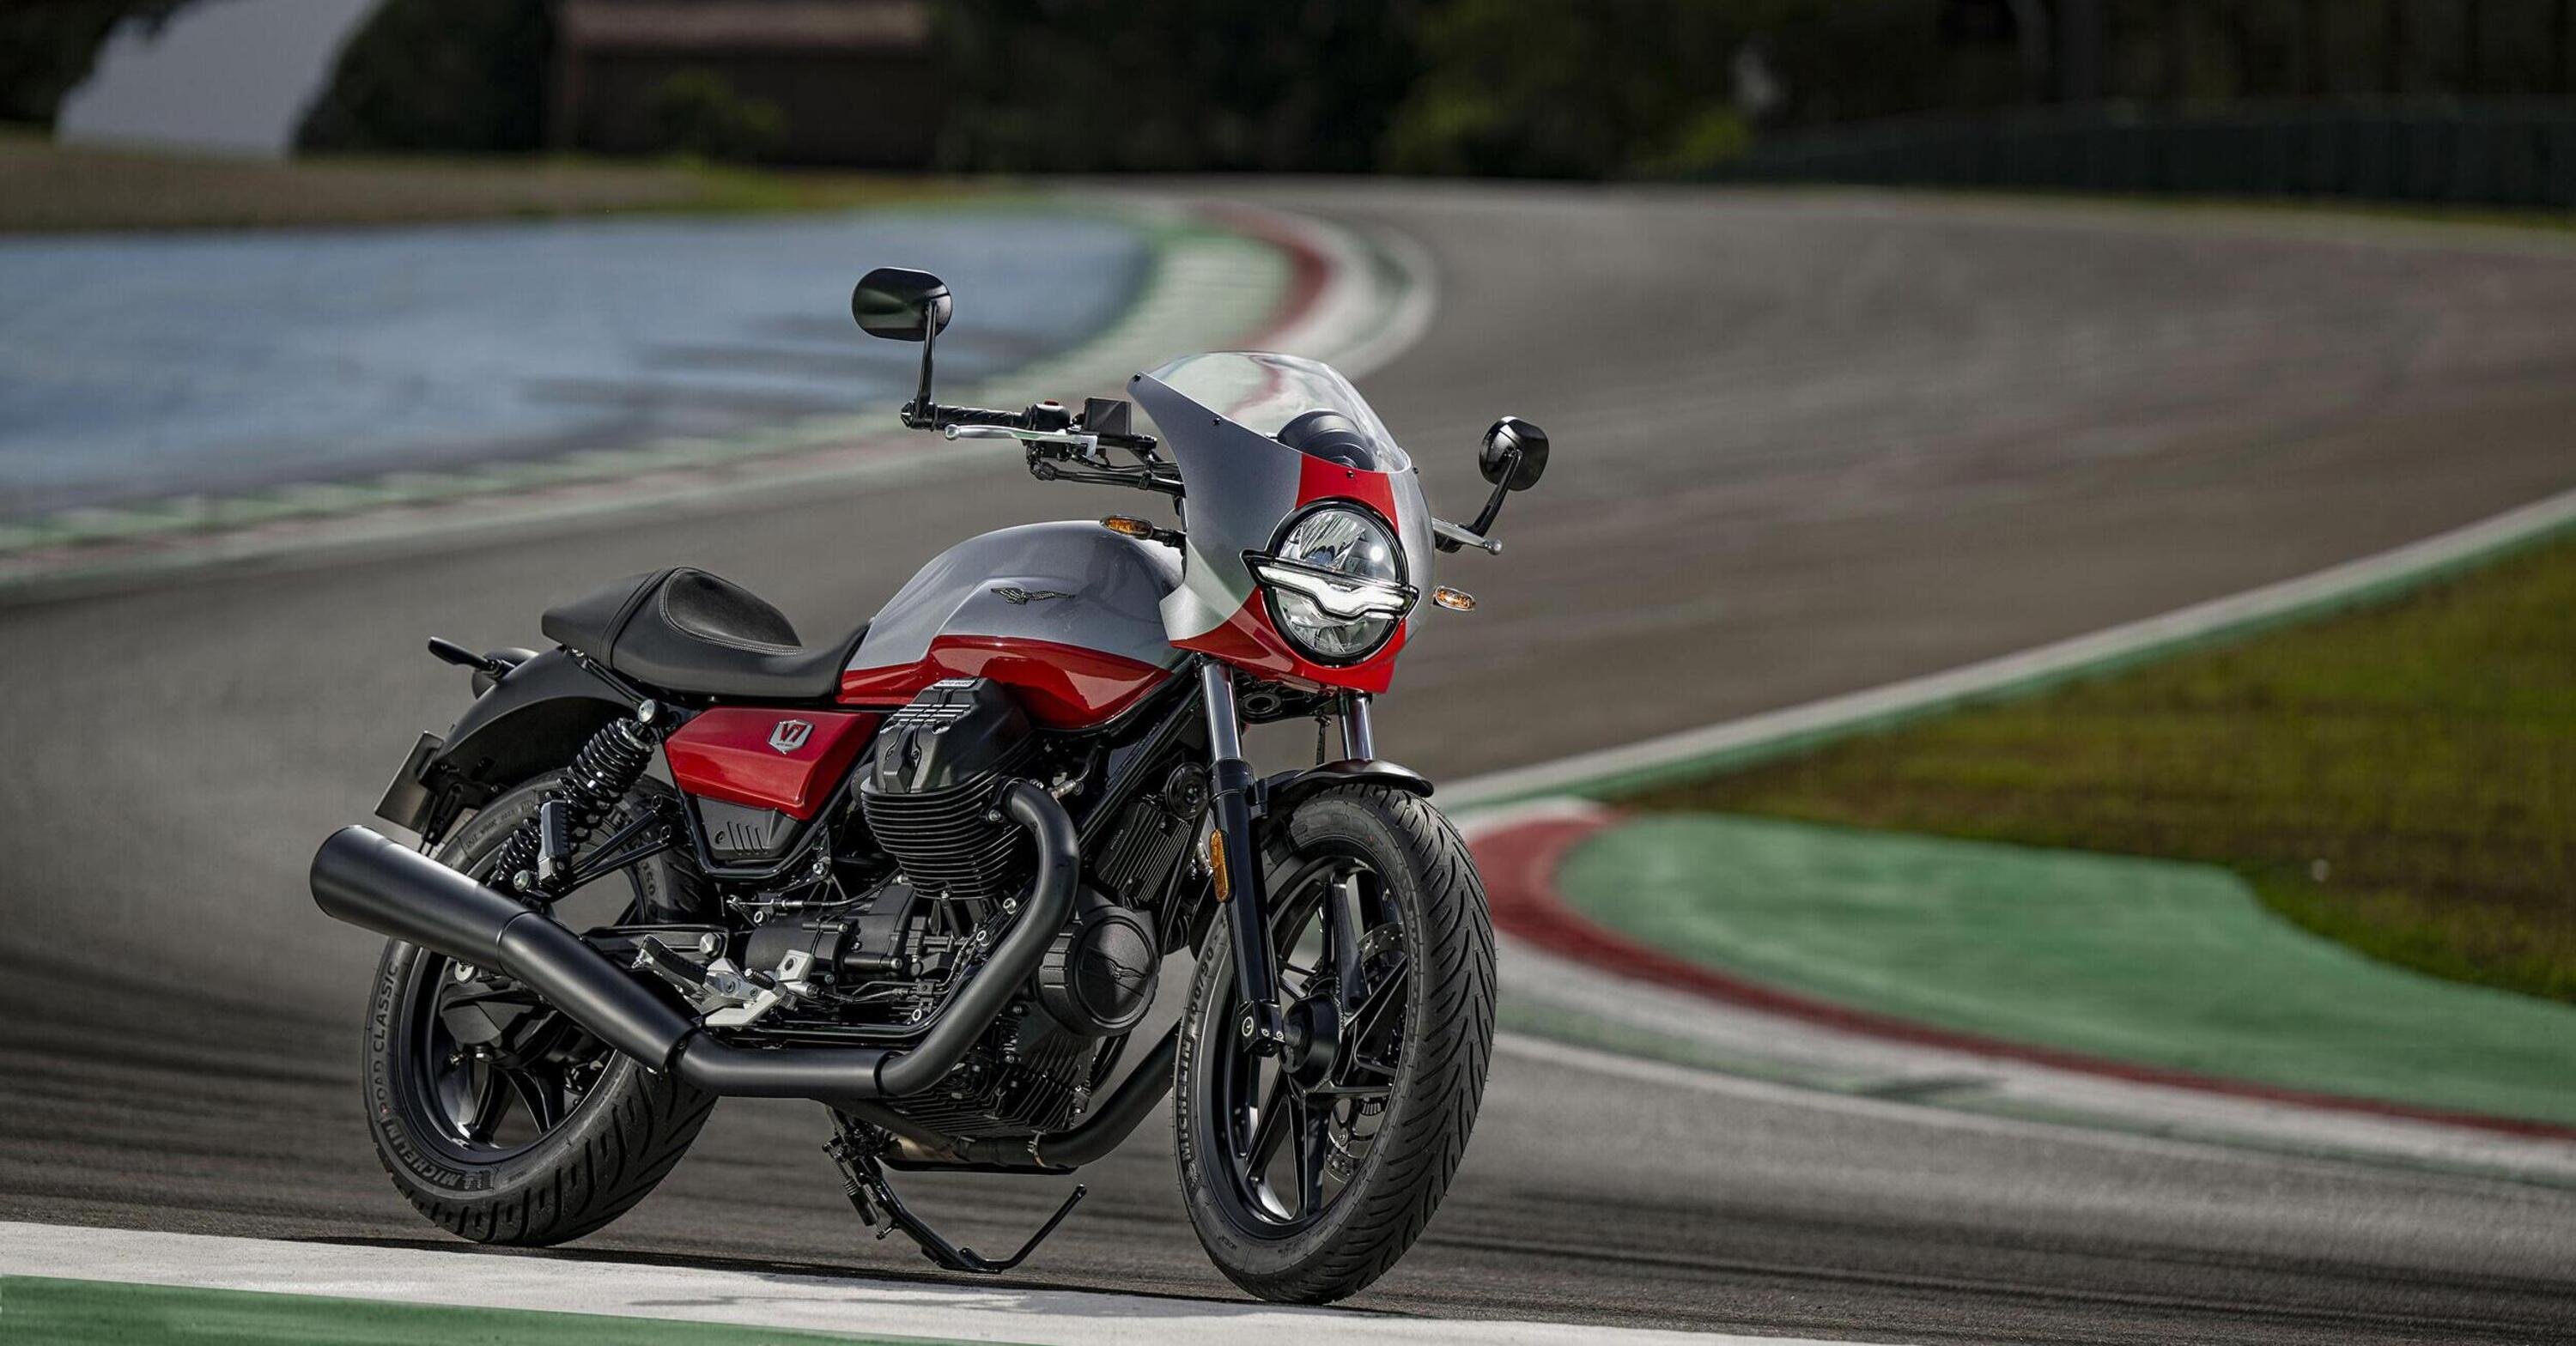 Svelata la nuova Moto Guzzi V7 Stone Corsa